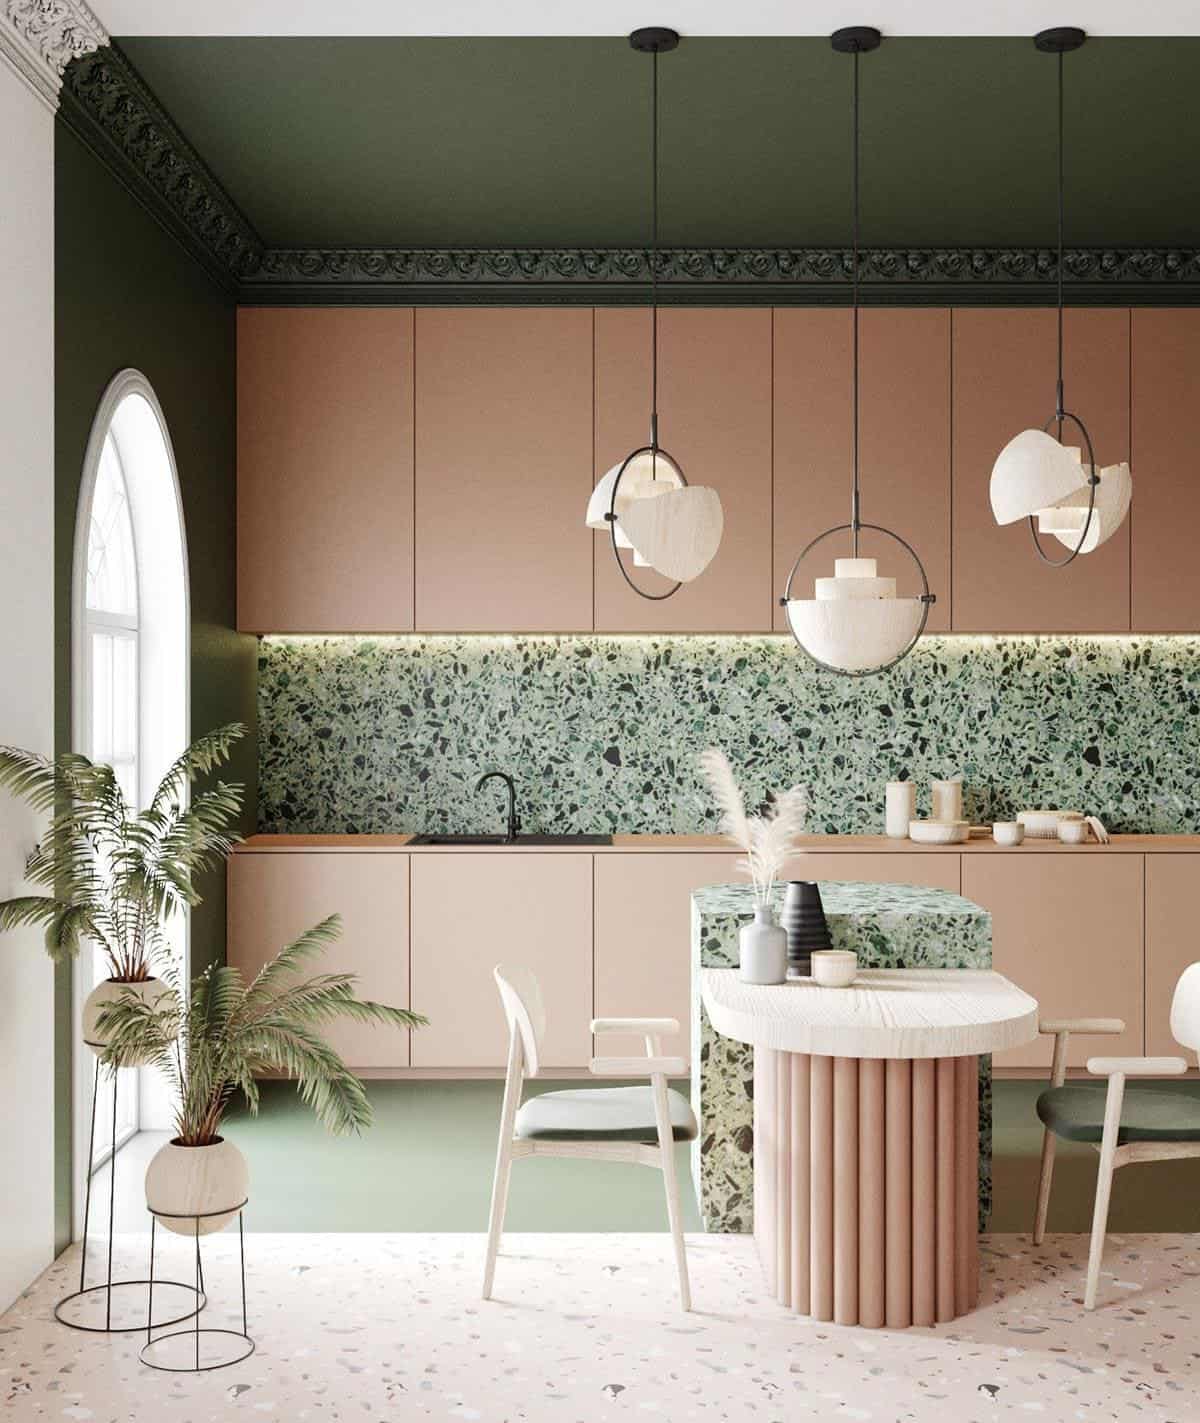  thiết kế phòng bếp tông màu pastel hồng nhẹ nhàng